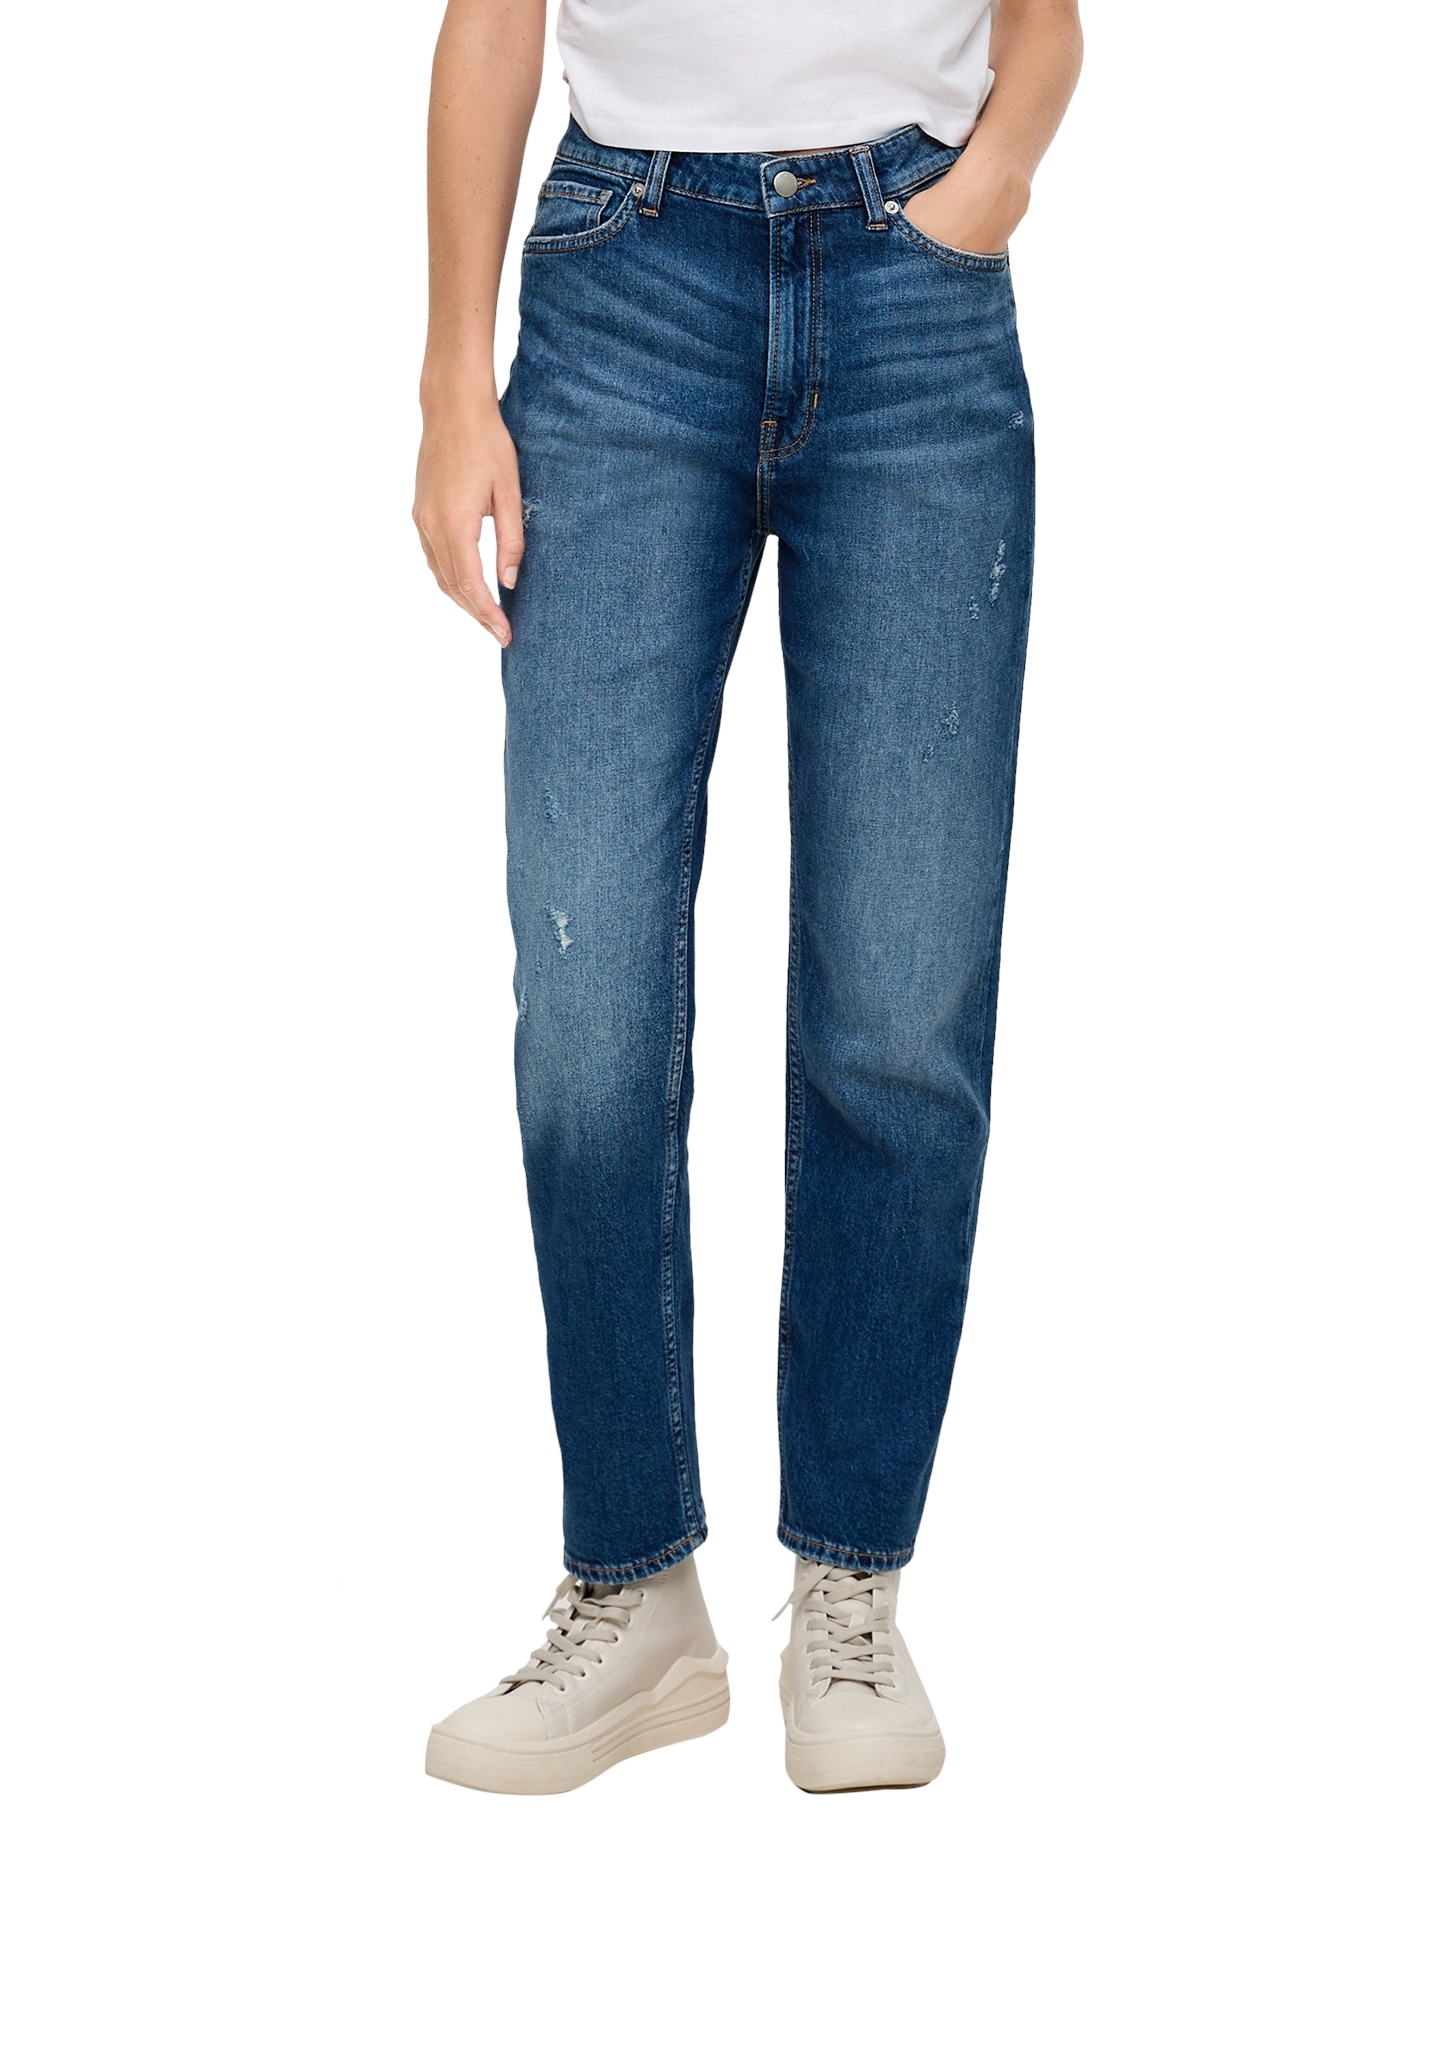 bestellen by Beinverlauf s.Oliver online OTTO mit 5-Pocket-Jeans, bei geradem Q/S